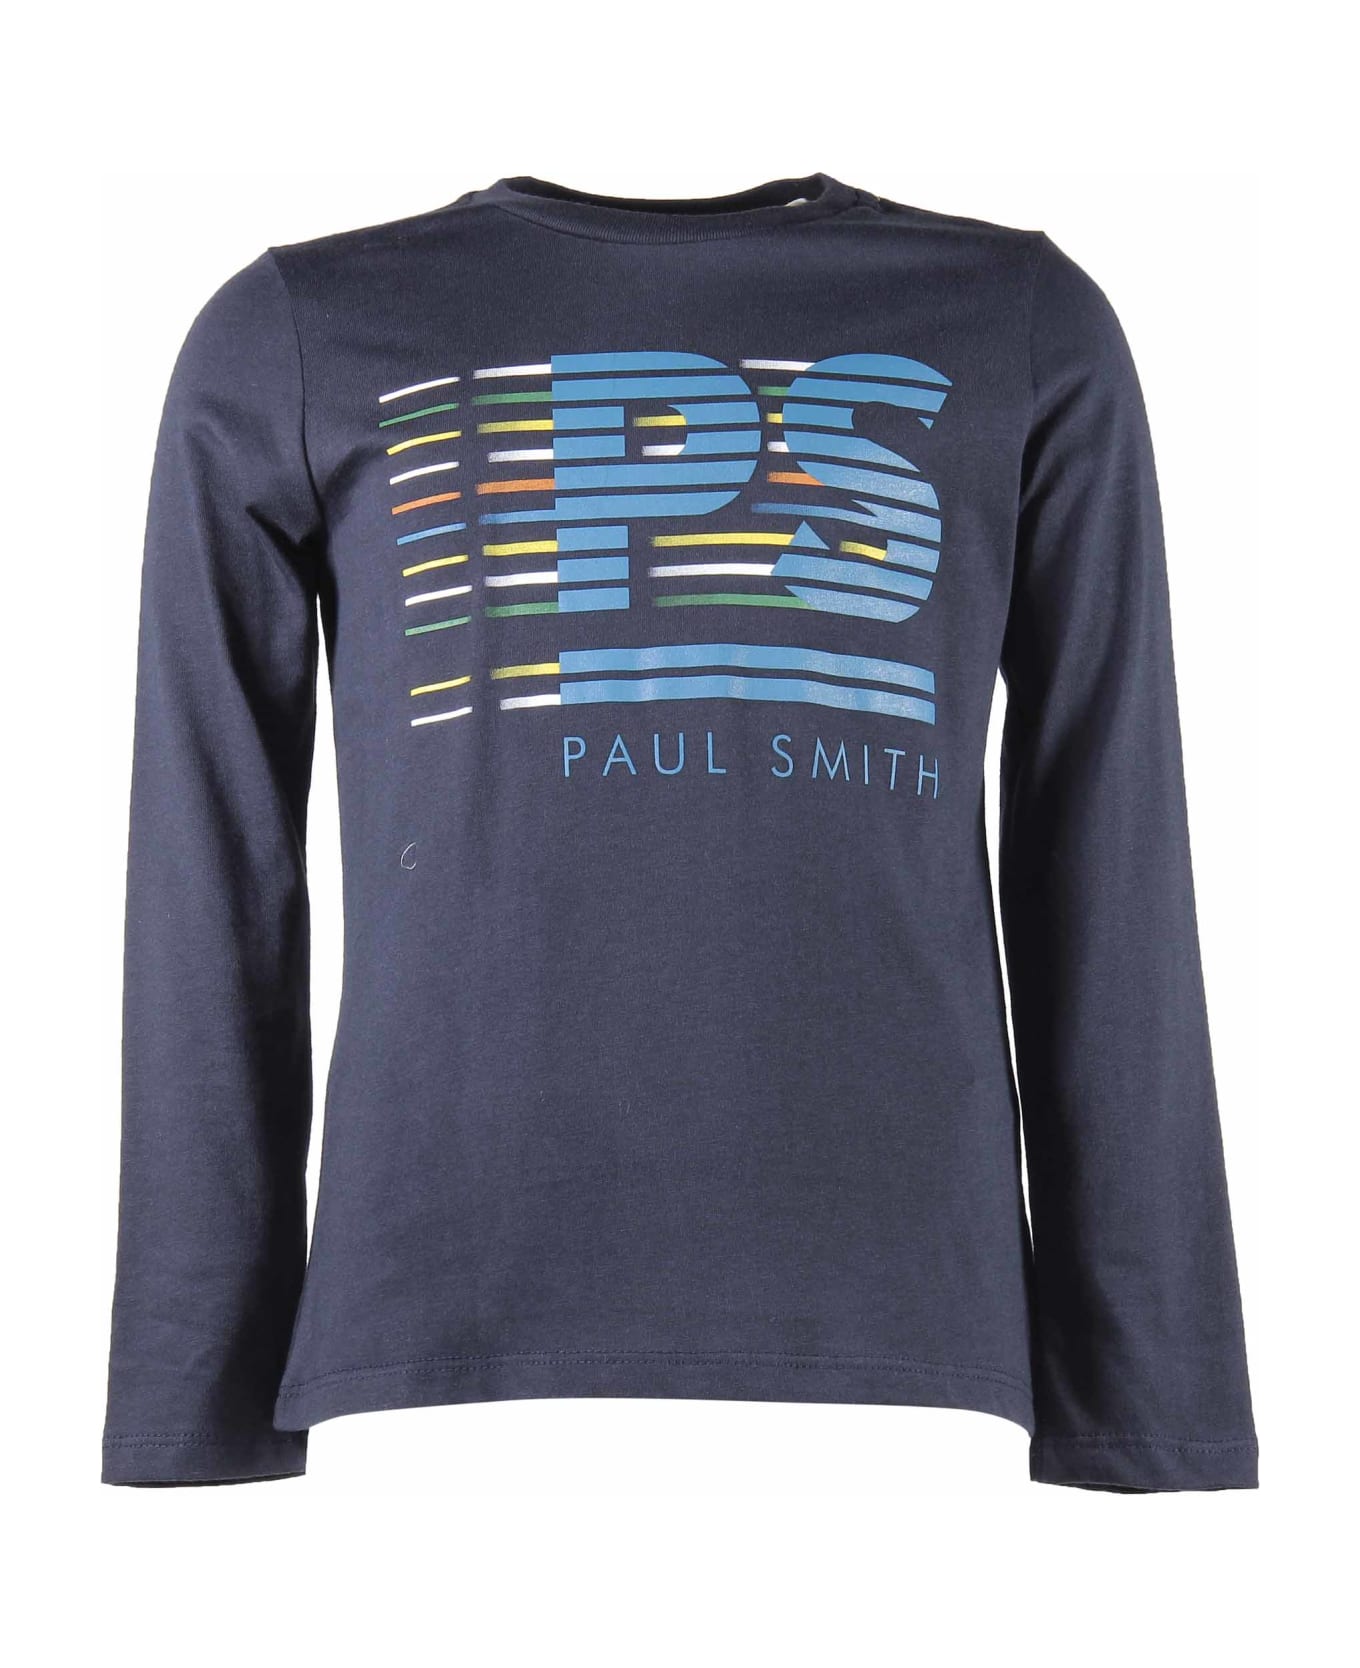 Paul Smith Junior Paul Smith T-shirt Blu Navy In Jersey Di Cotone Con Logo - Blu